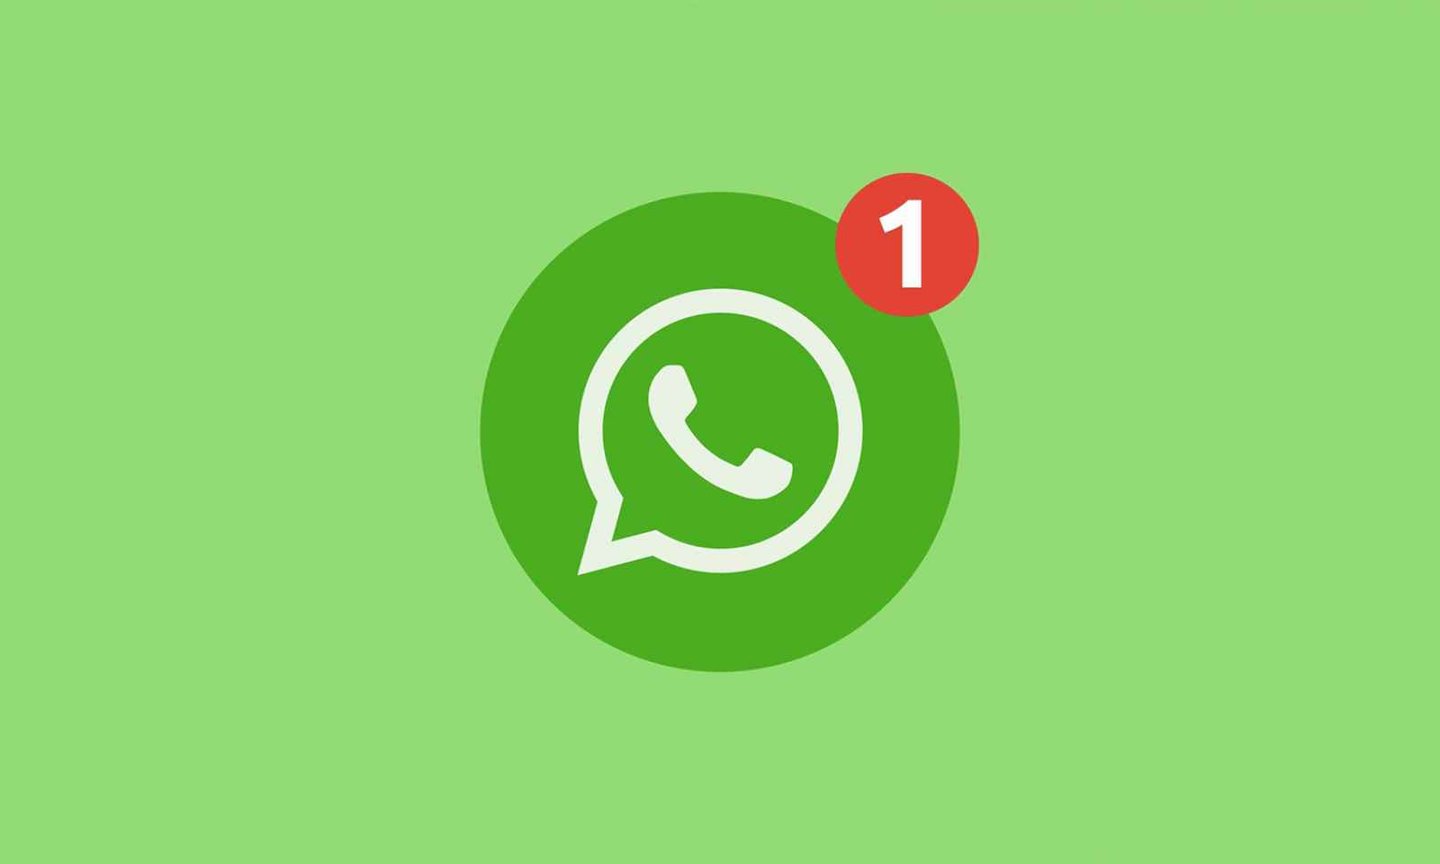 WhatsApp ses kaydetme ve ses kaydını kaydı indirme işlemi nasıl yapılır?